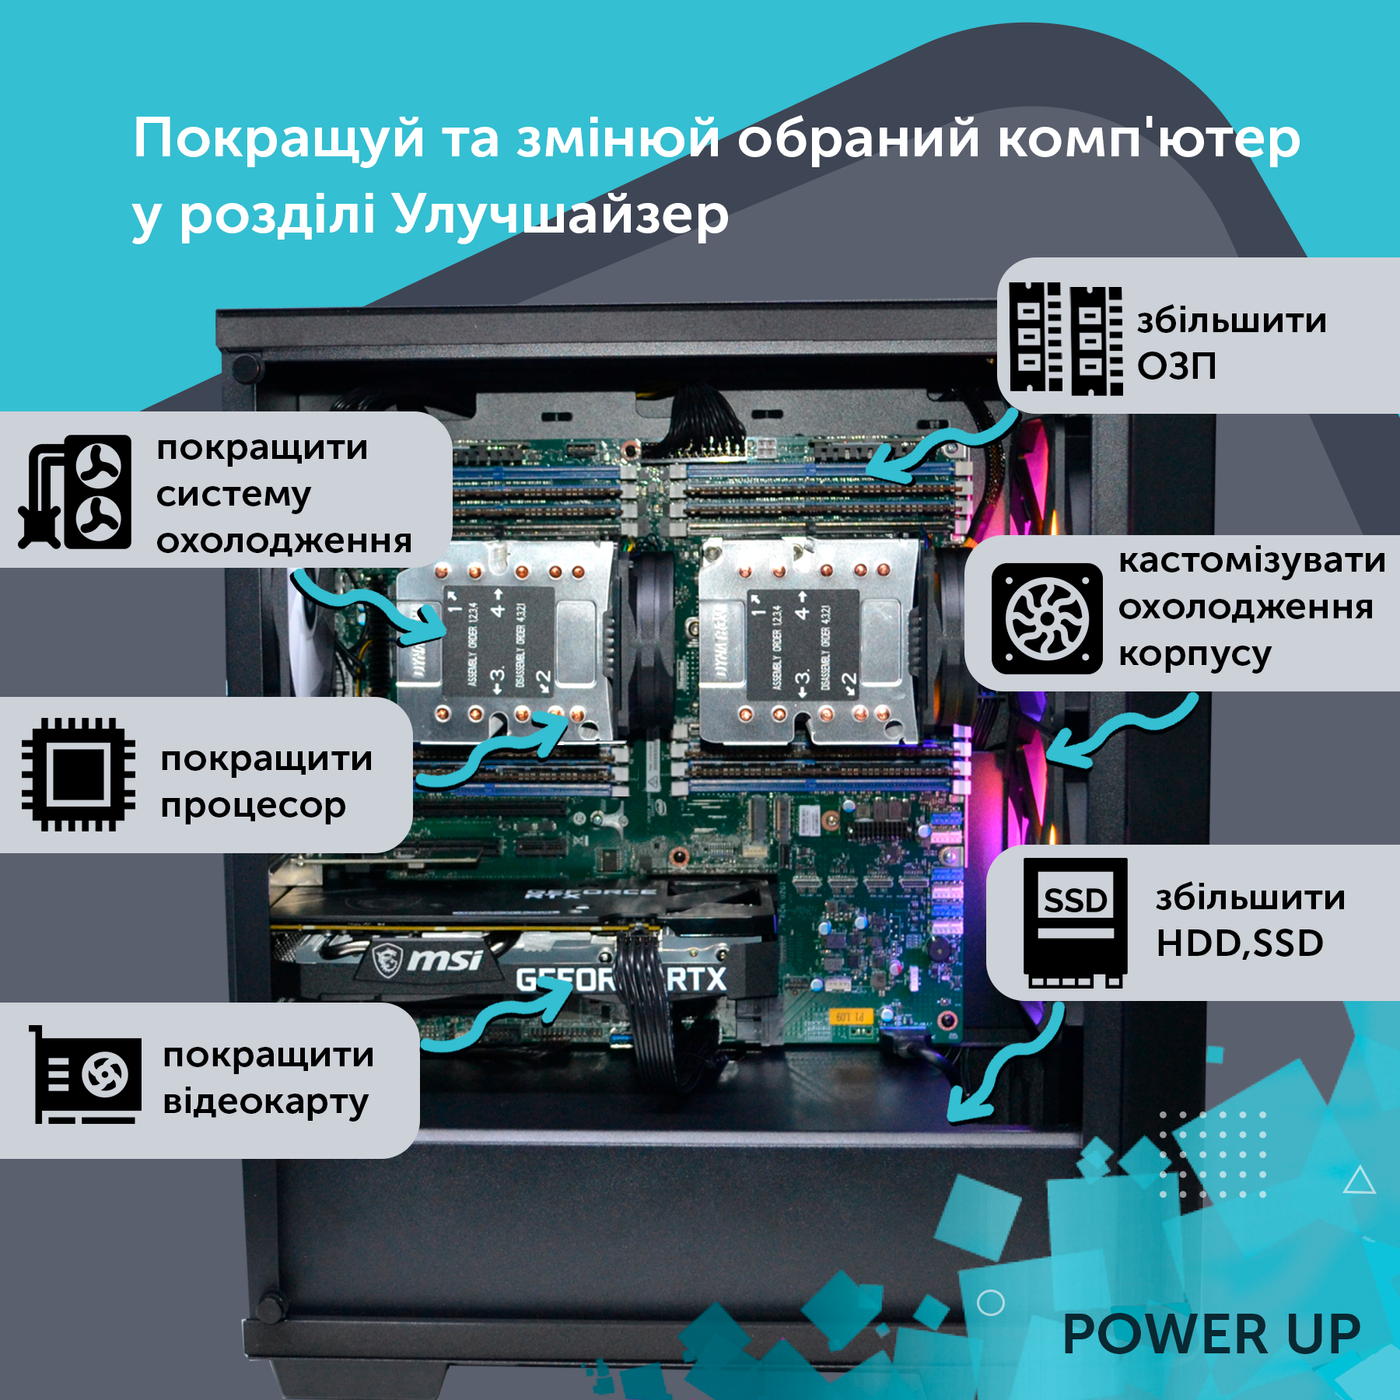 Сервер двопроцесорний TOWER PowerUp #29 Xeon E5 2690 v3 x2/32 GB/SSD 256GB х2 Raid/Int Video